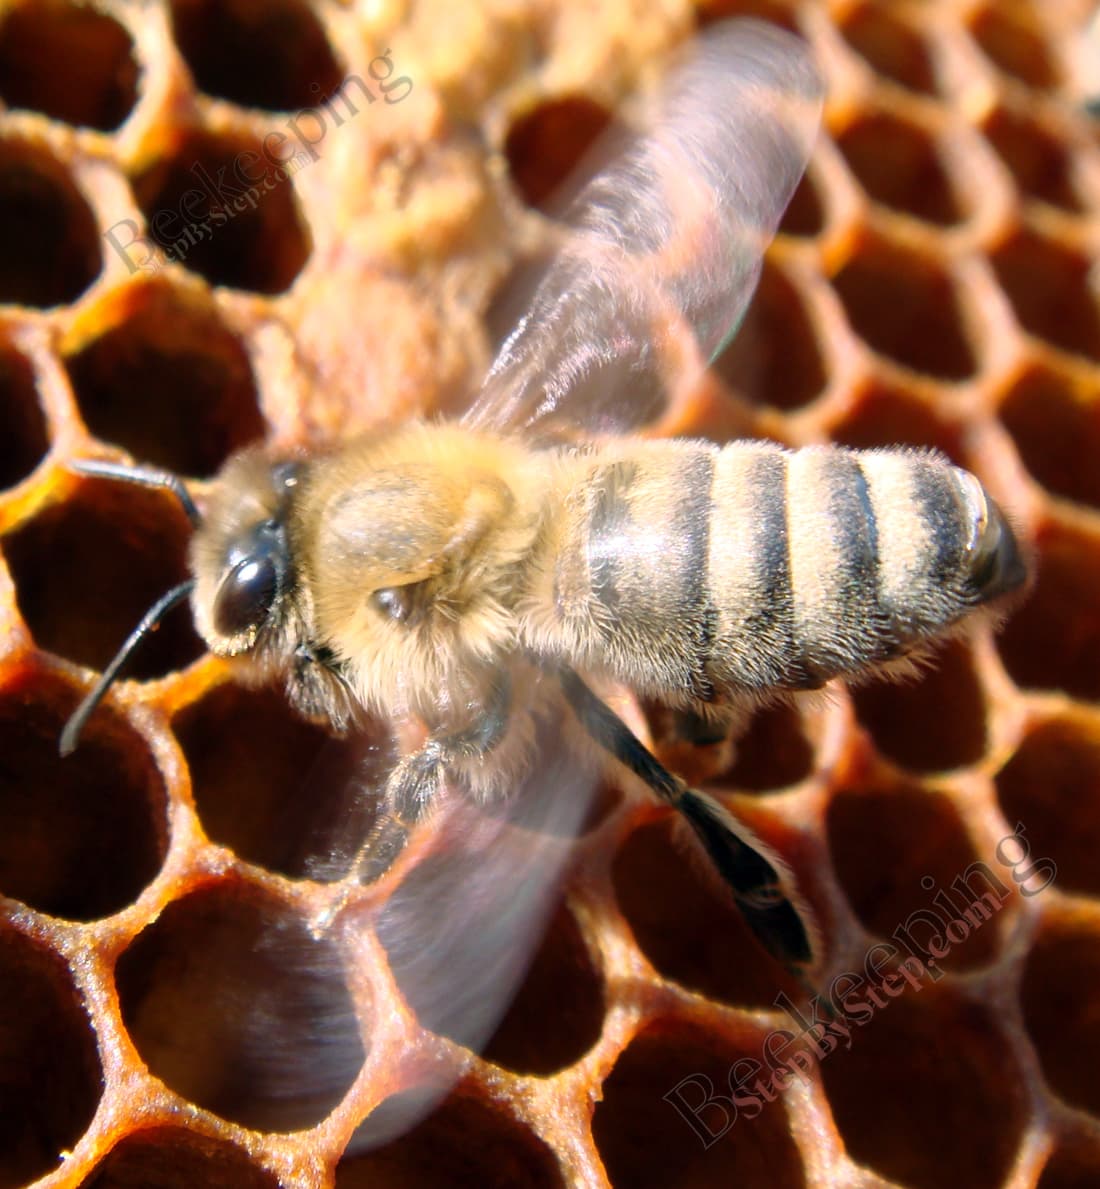 Worker bee fanning